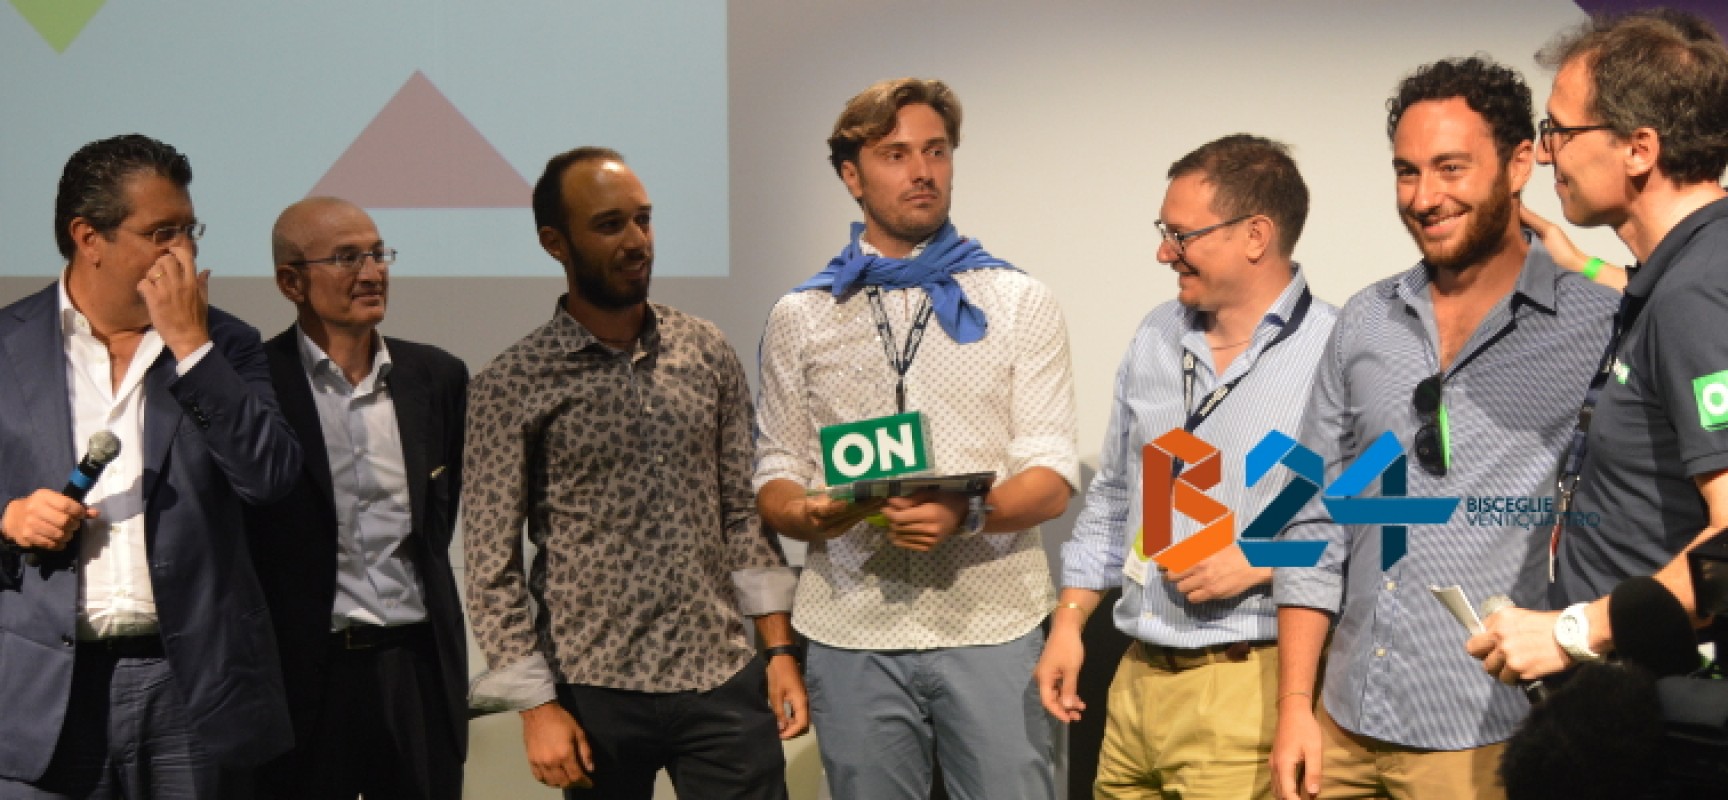 AuLAb vince il Premio DigithON2016, Francesco Boccia: «Ascoltiamo le idee dei giovani» / FOTO